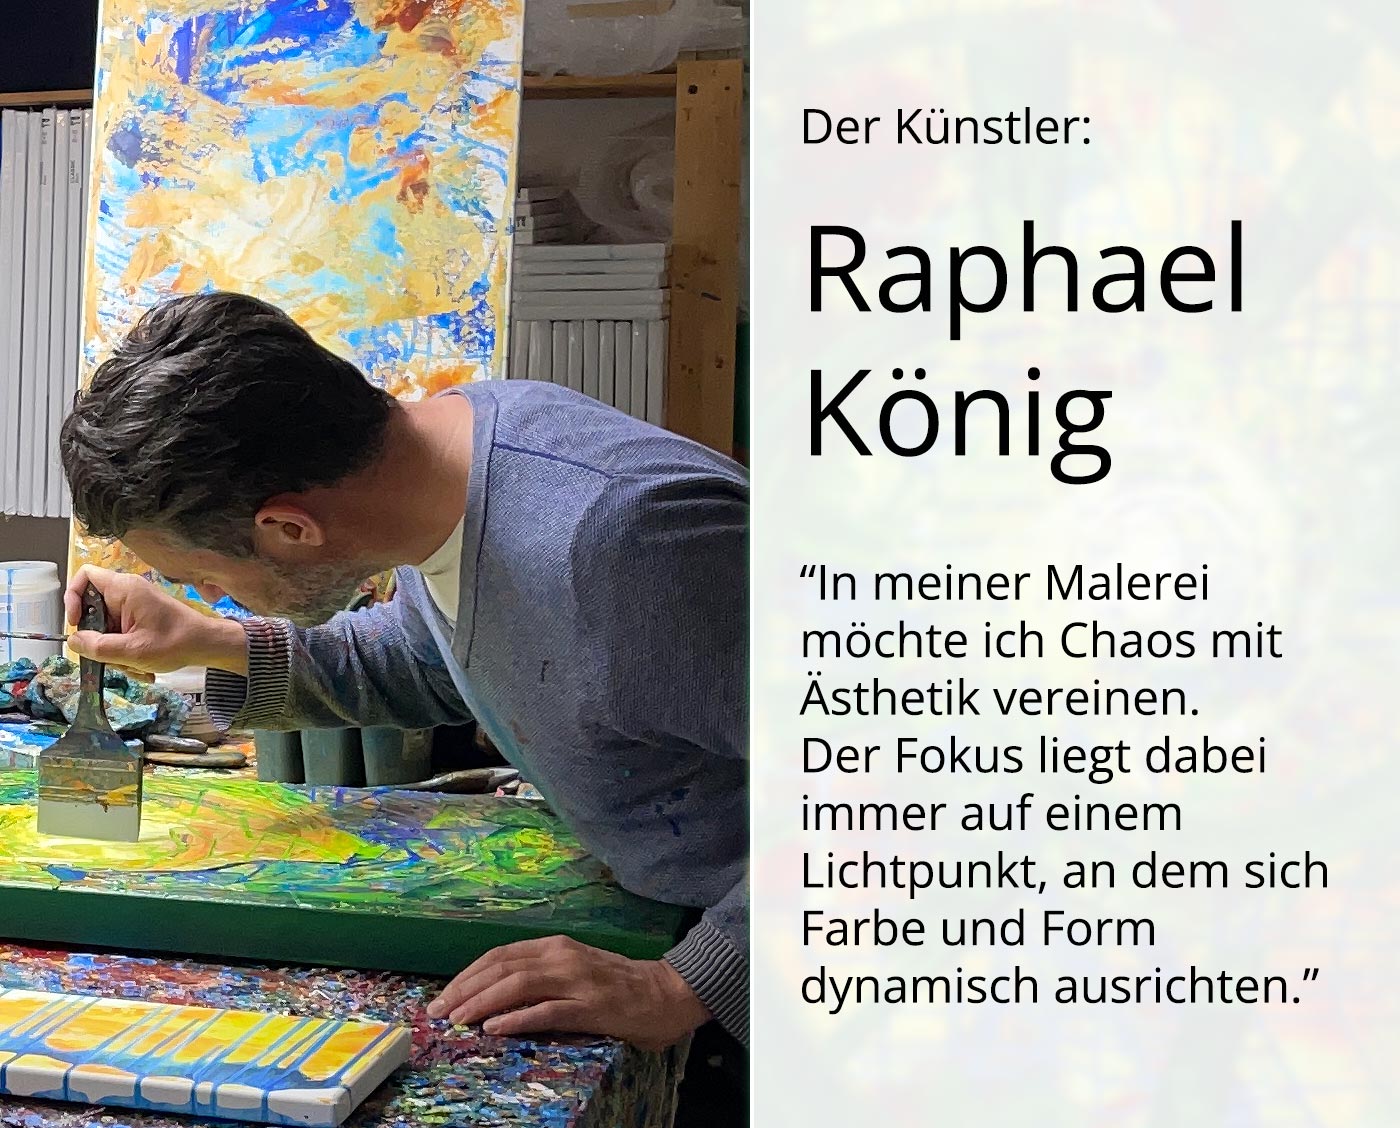 Edition, signierter Kunstdruck, Raphael König: "Fenster zum realen Raum"